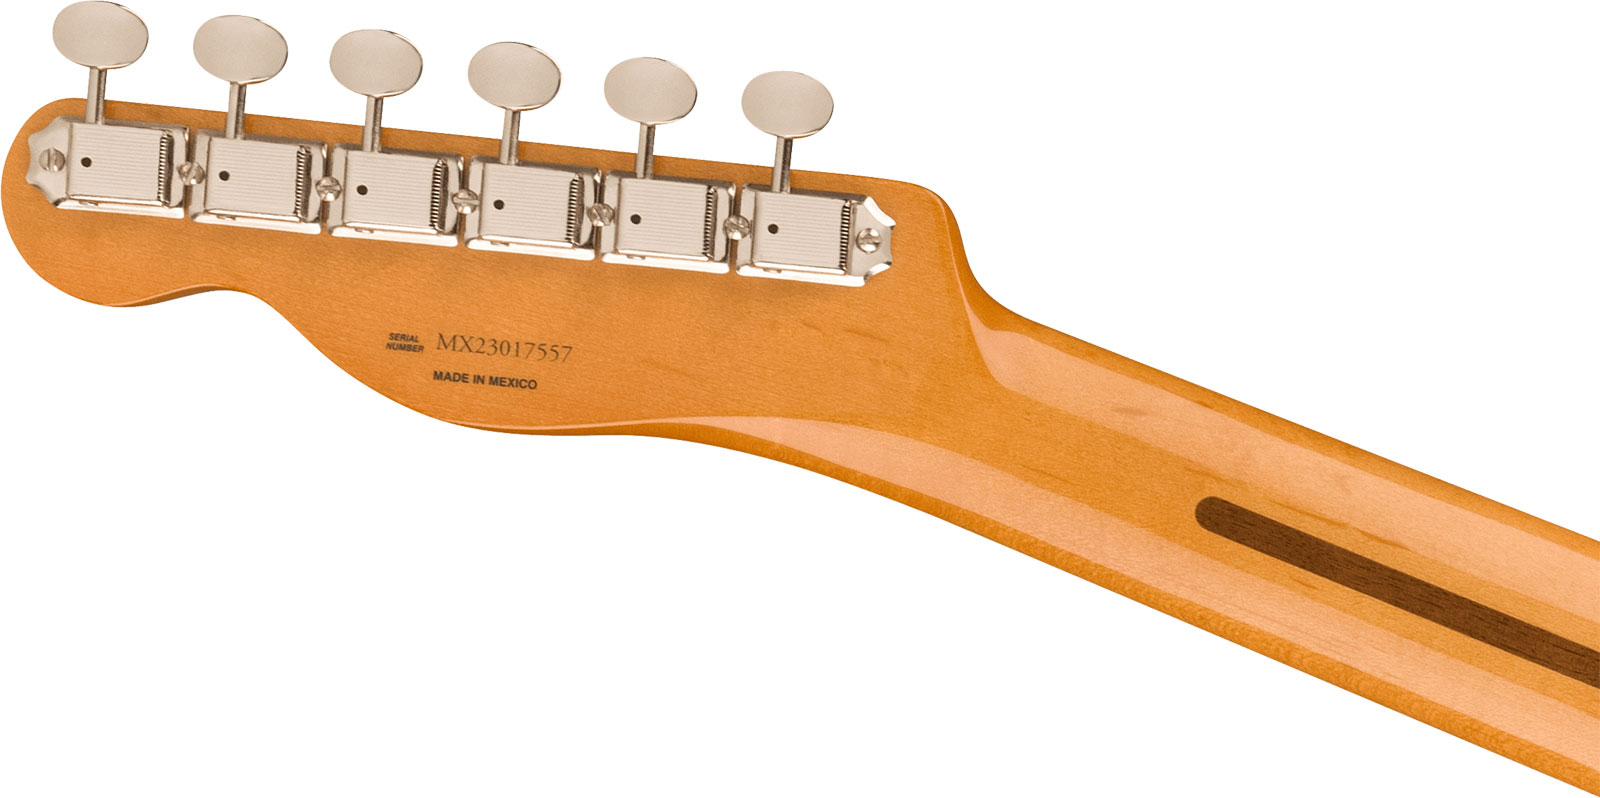 Fender Tele Nocaster 50s Vintera 2 Mex 2s Ht Mn - 2-color Sunburst - Guitare Électrique Forme Tel - Variation 3